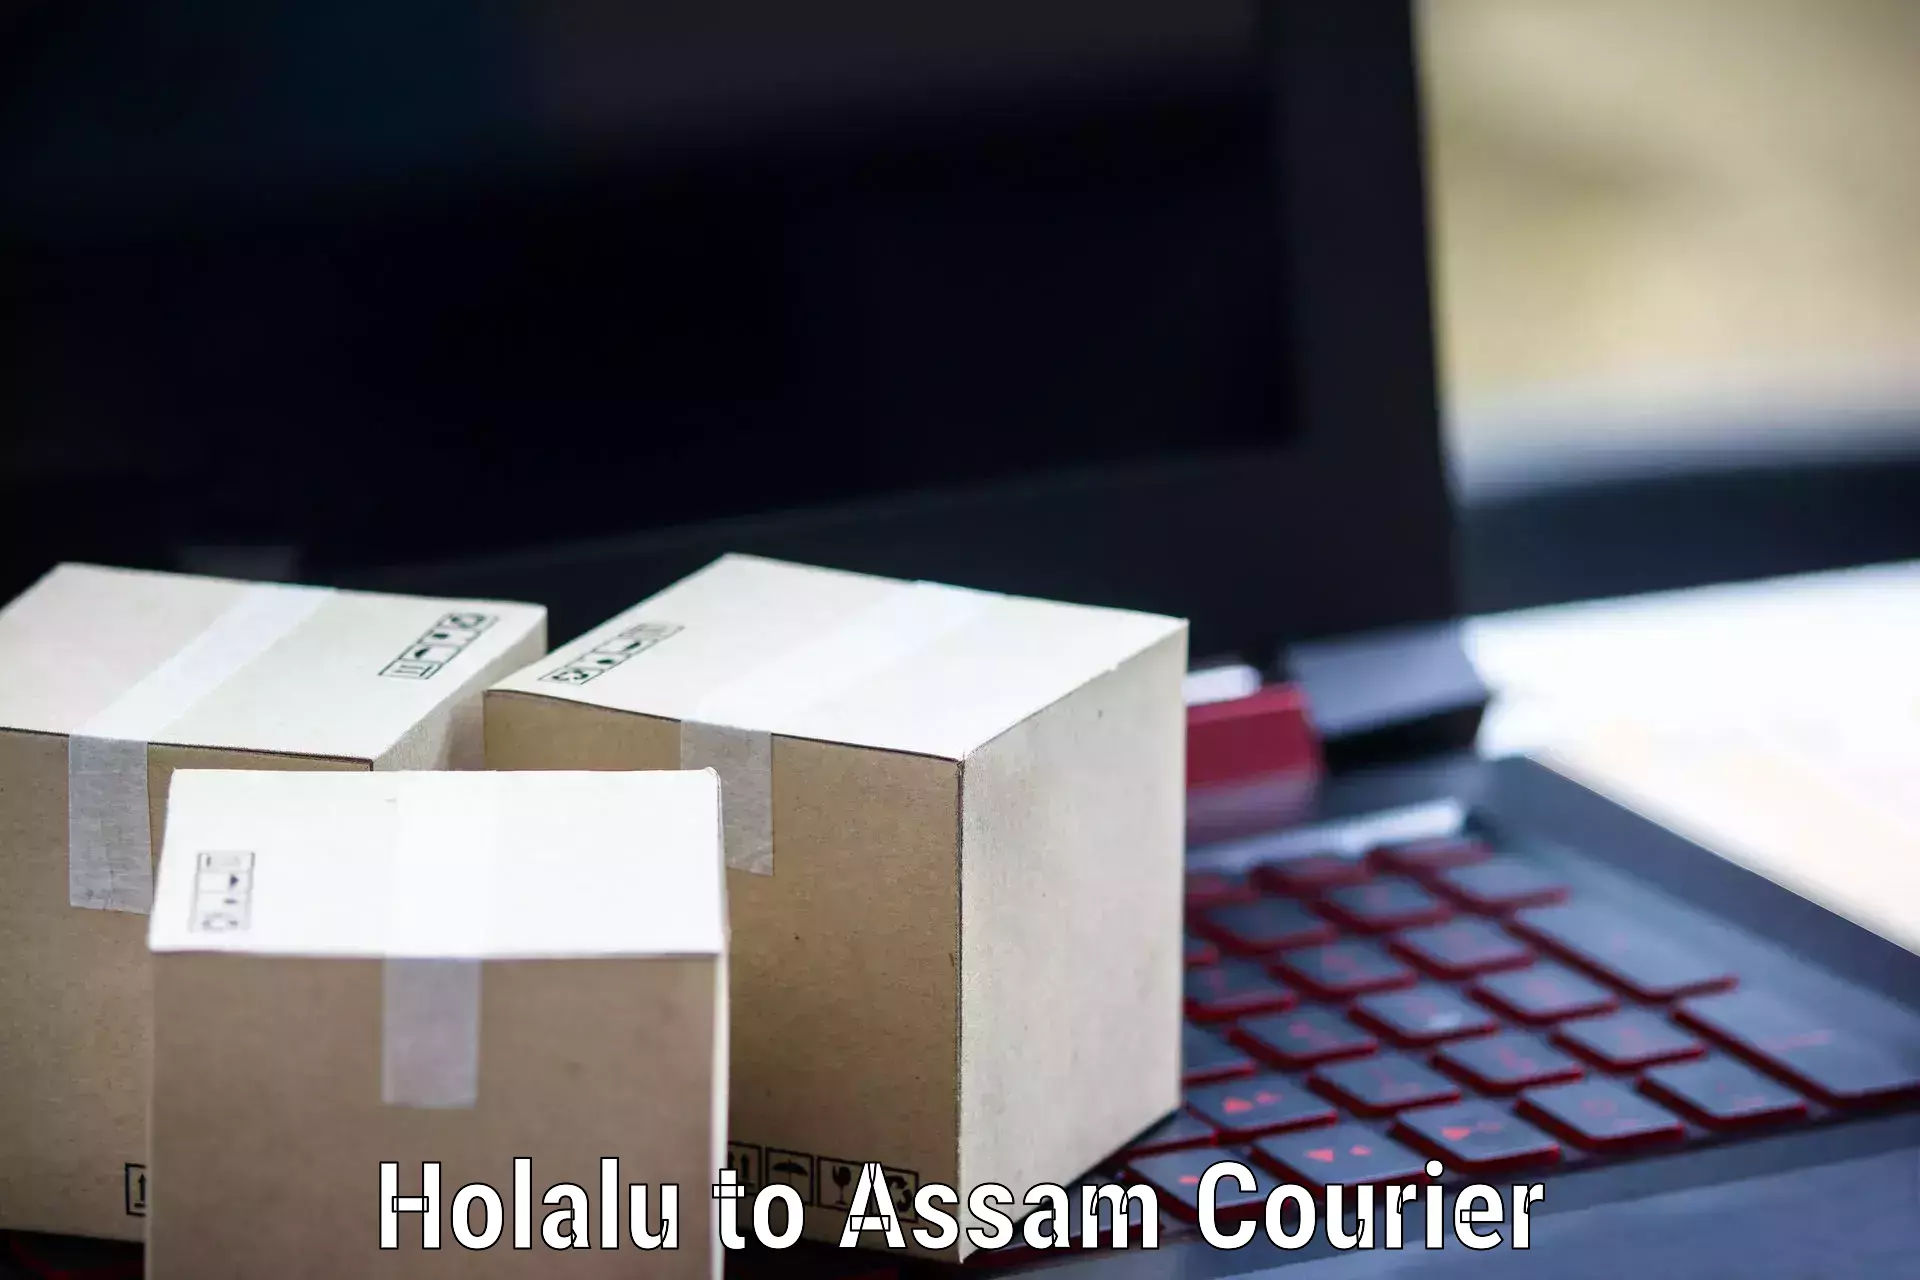 Affordable parcel service Holalu to Behali